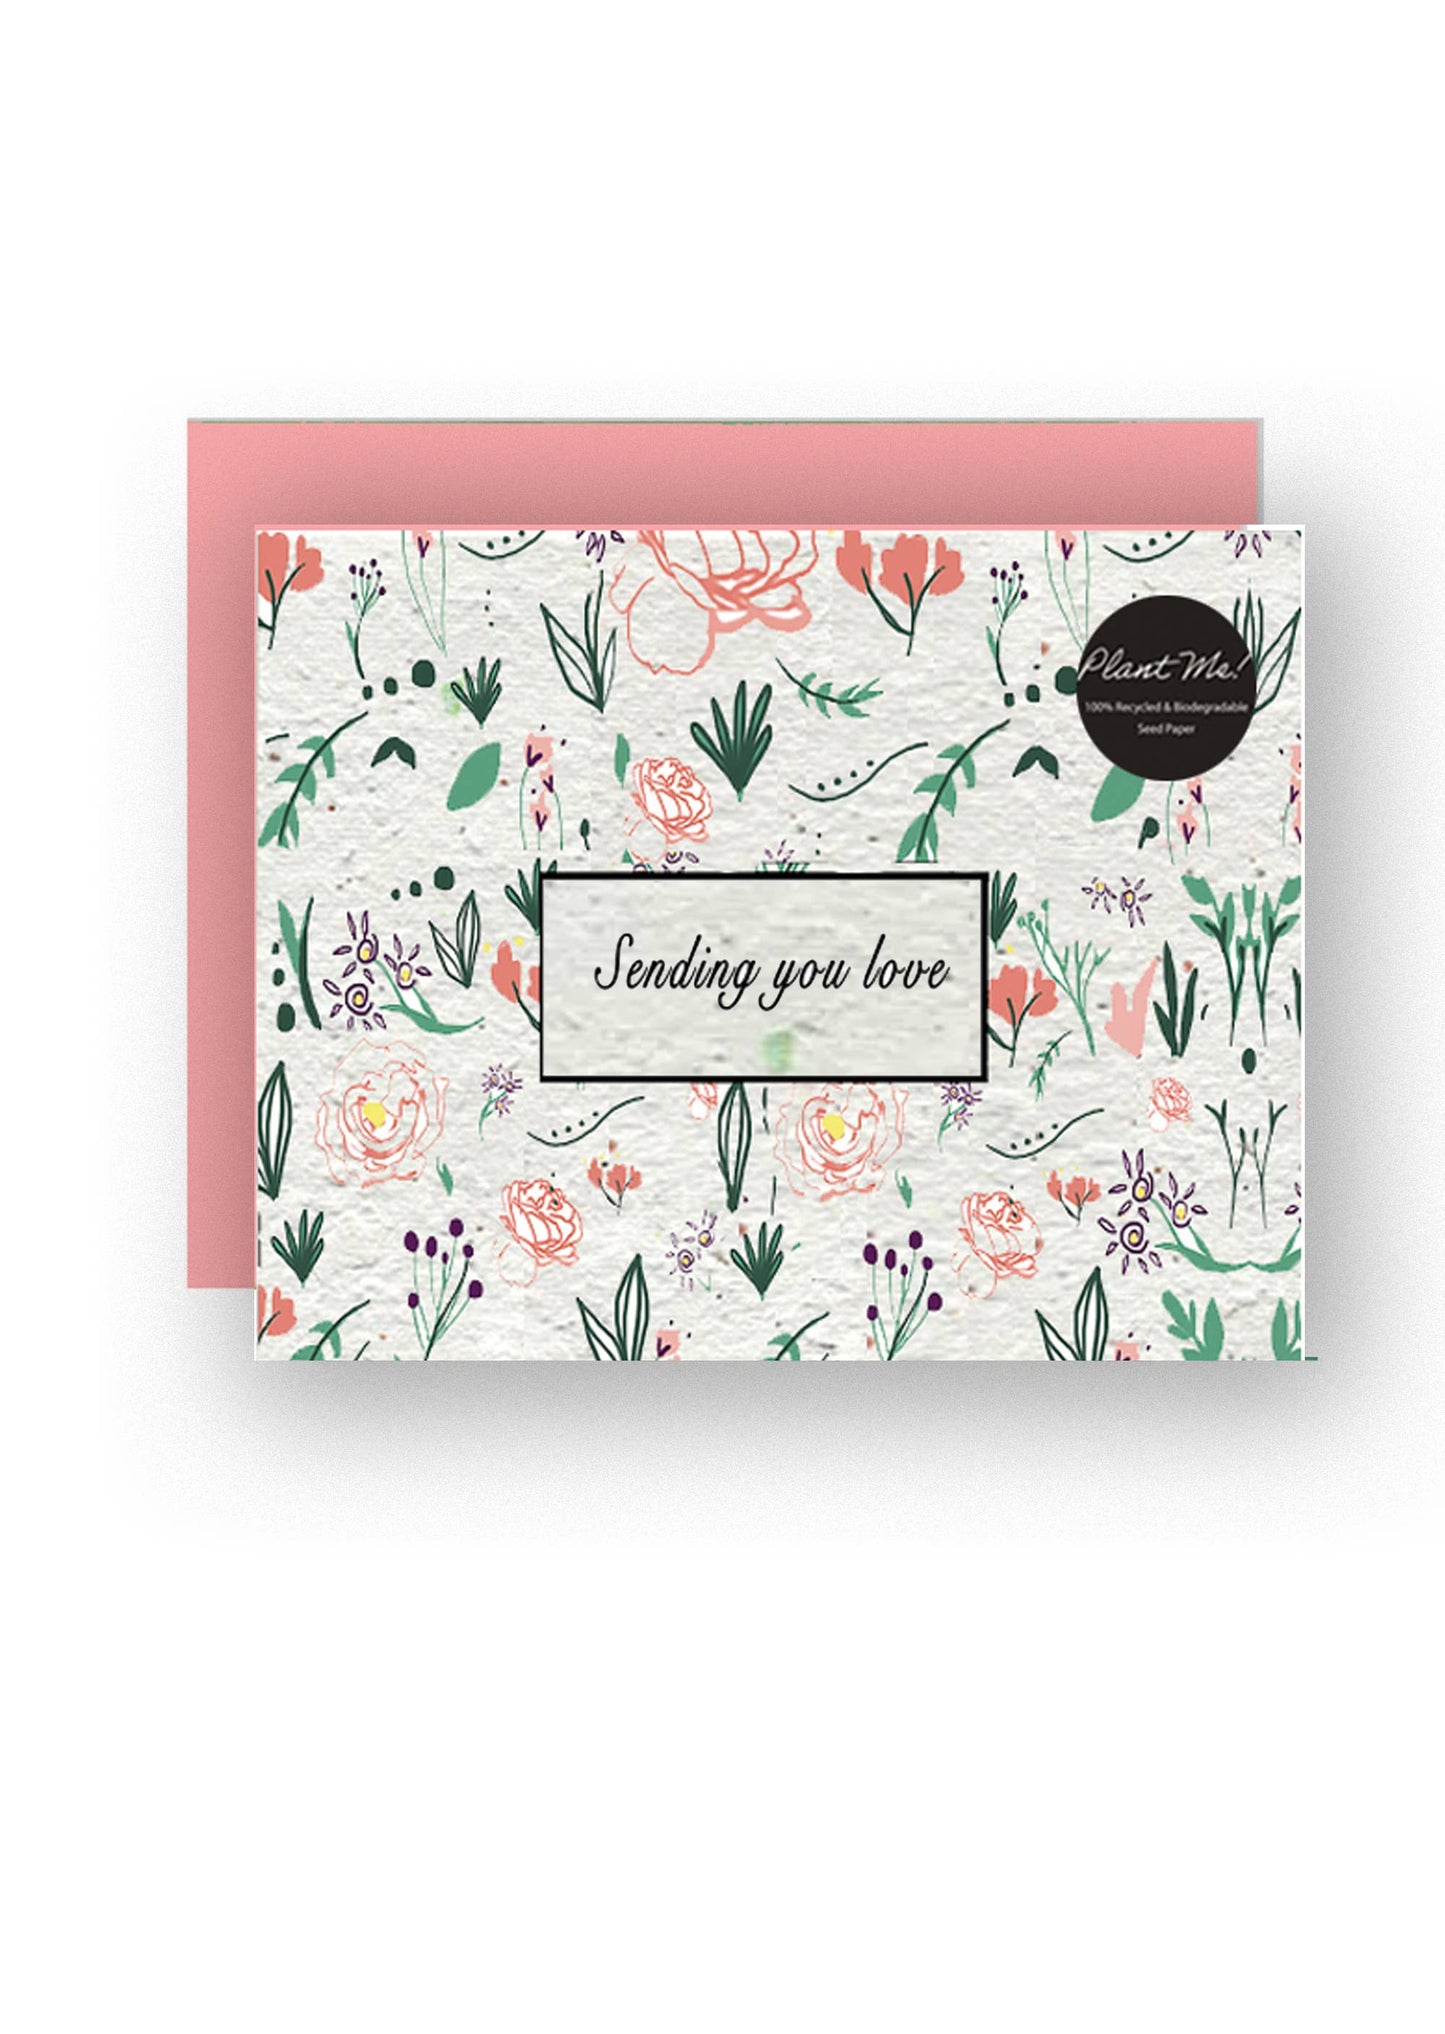 Sending You Love || Wildflower Greeting Card